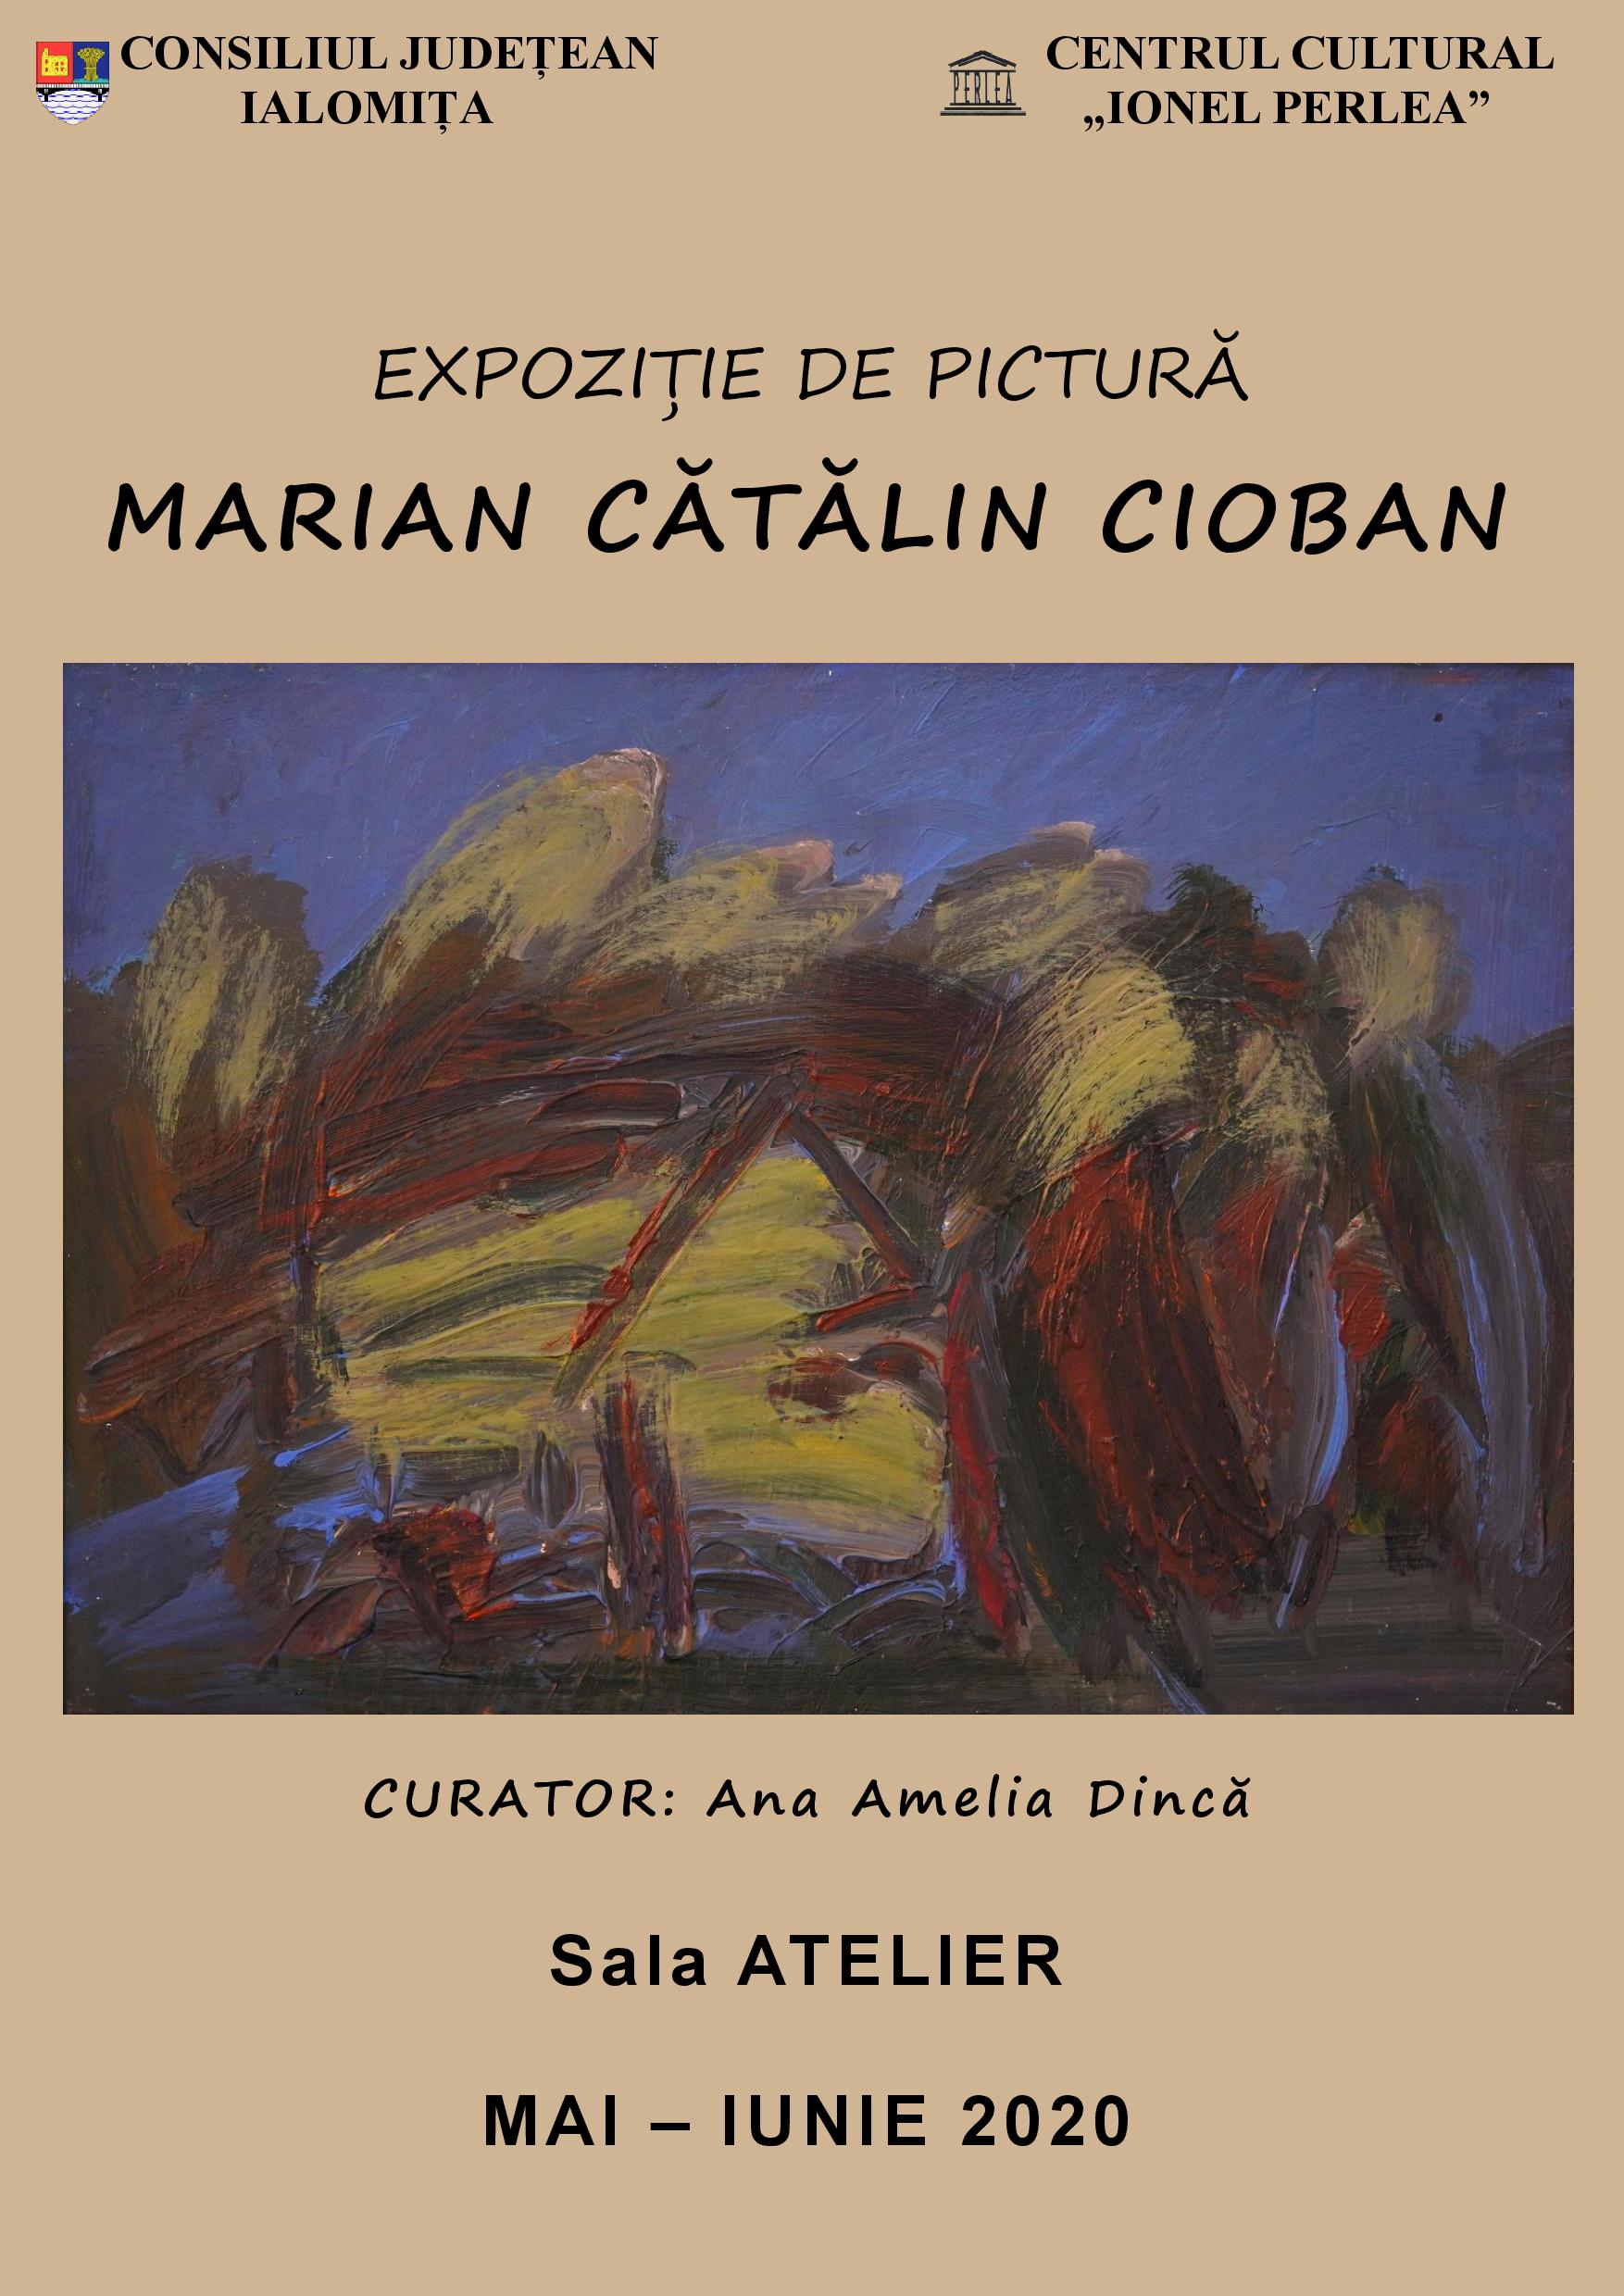 Expoziţie de pictură – Marian Cătălin Cioban, Centrul Cultural ,,Ionel Perlea”, Sala Atelier, Mai-Iunie 2020